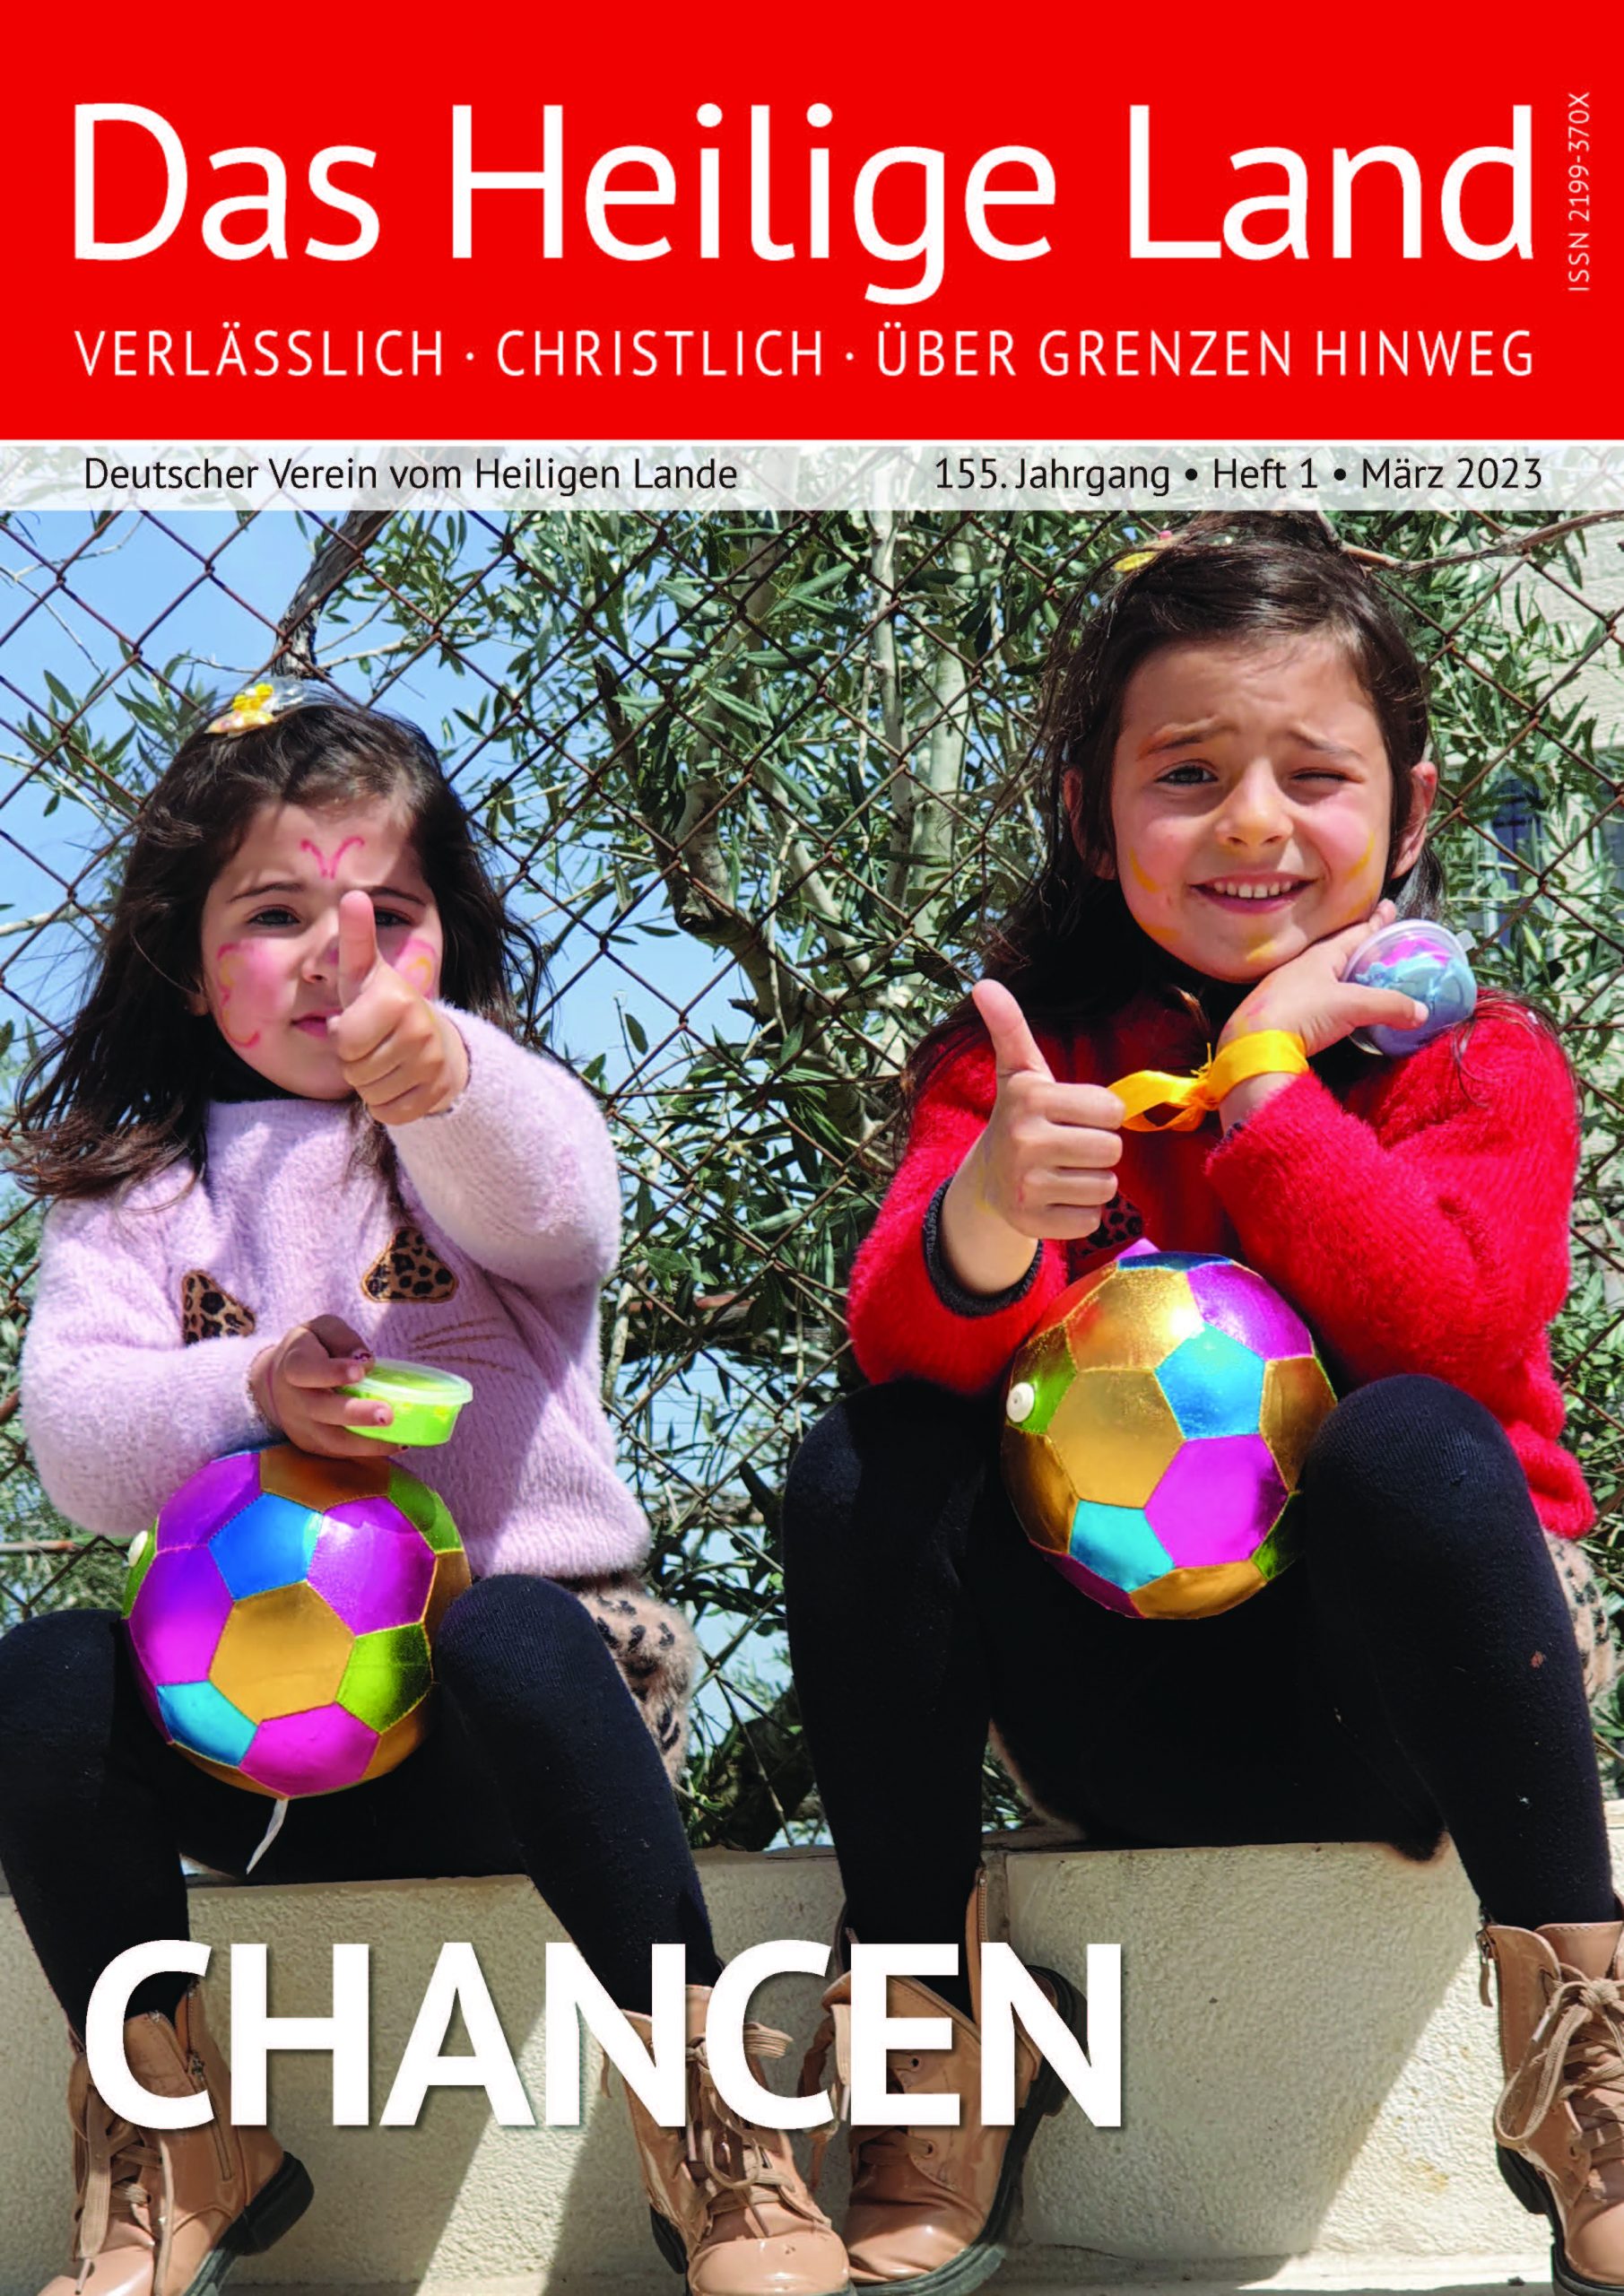 Zu sehen ist das Cover unseres Mitglieder-Magazins, die Ausgabe 1-23. Darauf zu sehen sind zwei Mädchen, die den Daumen hochstrecken und einen Ball halten.